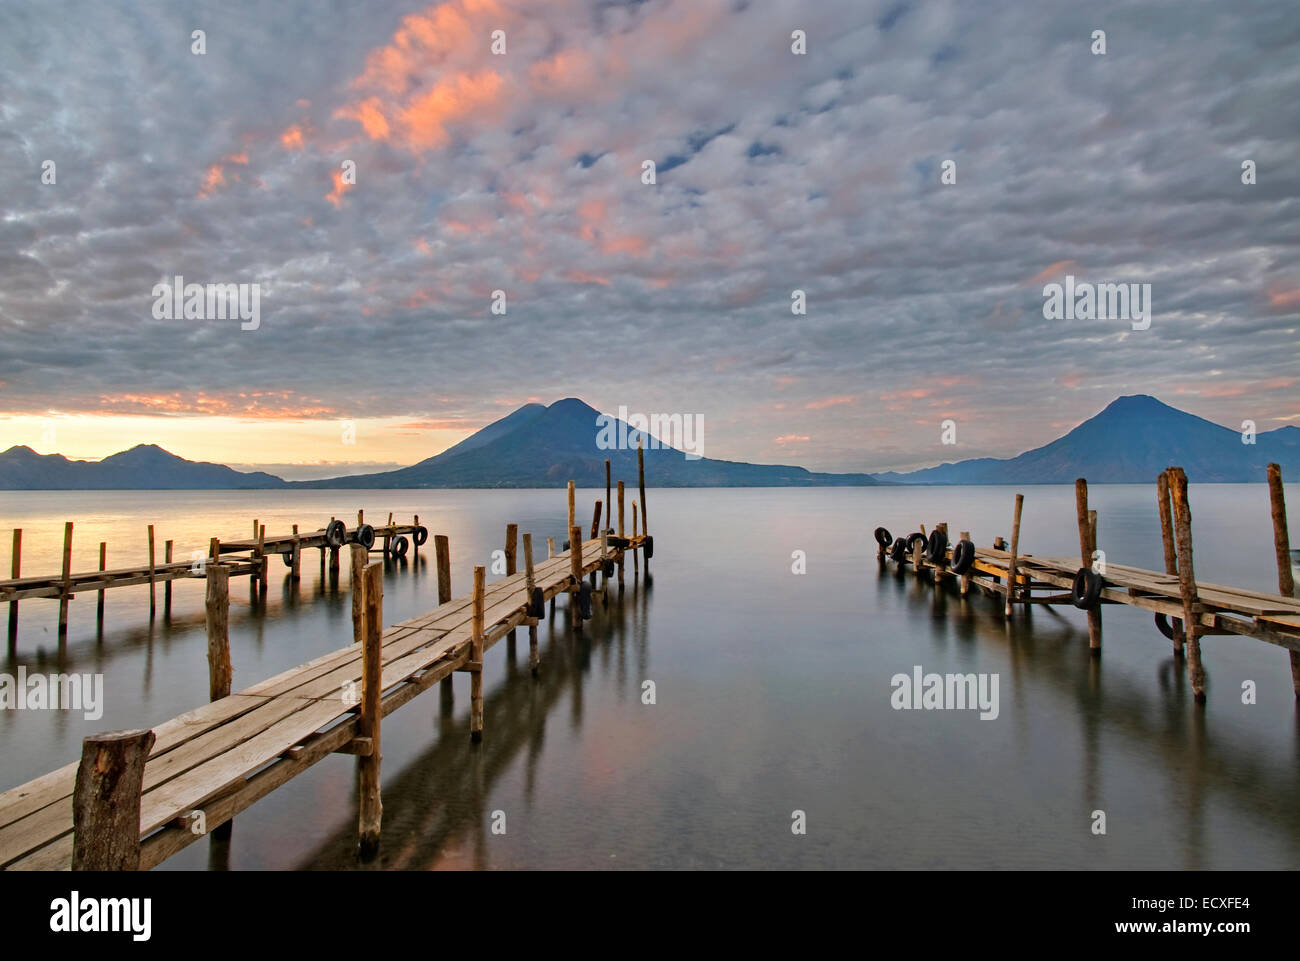 Lake Atitlan, Guatemala Stock Photo